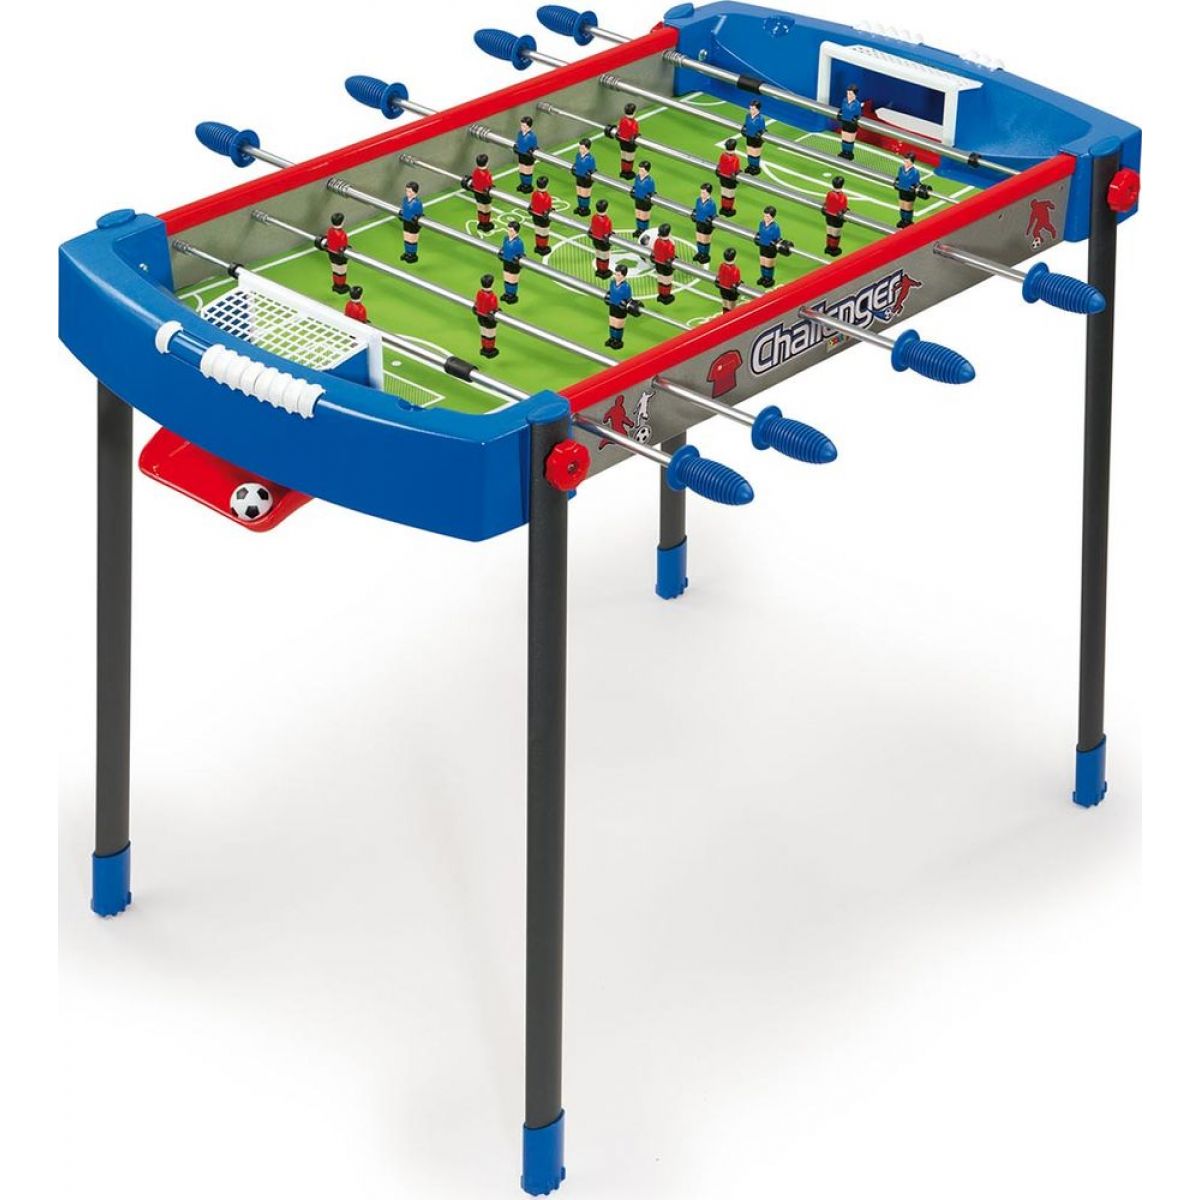 Stolný futbal - Smoby futbalový stôl Challenger 620200 modro-červený